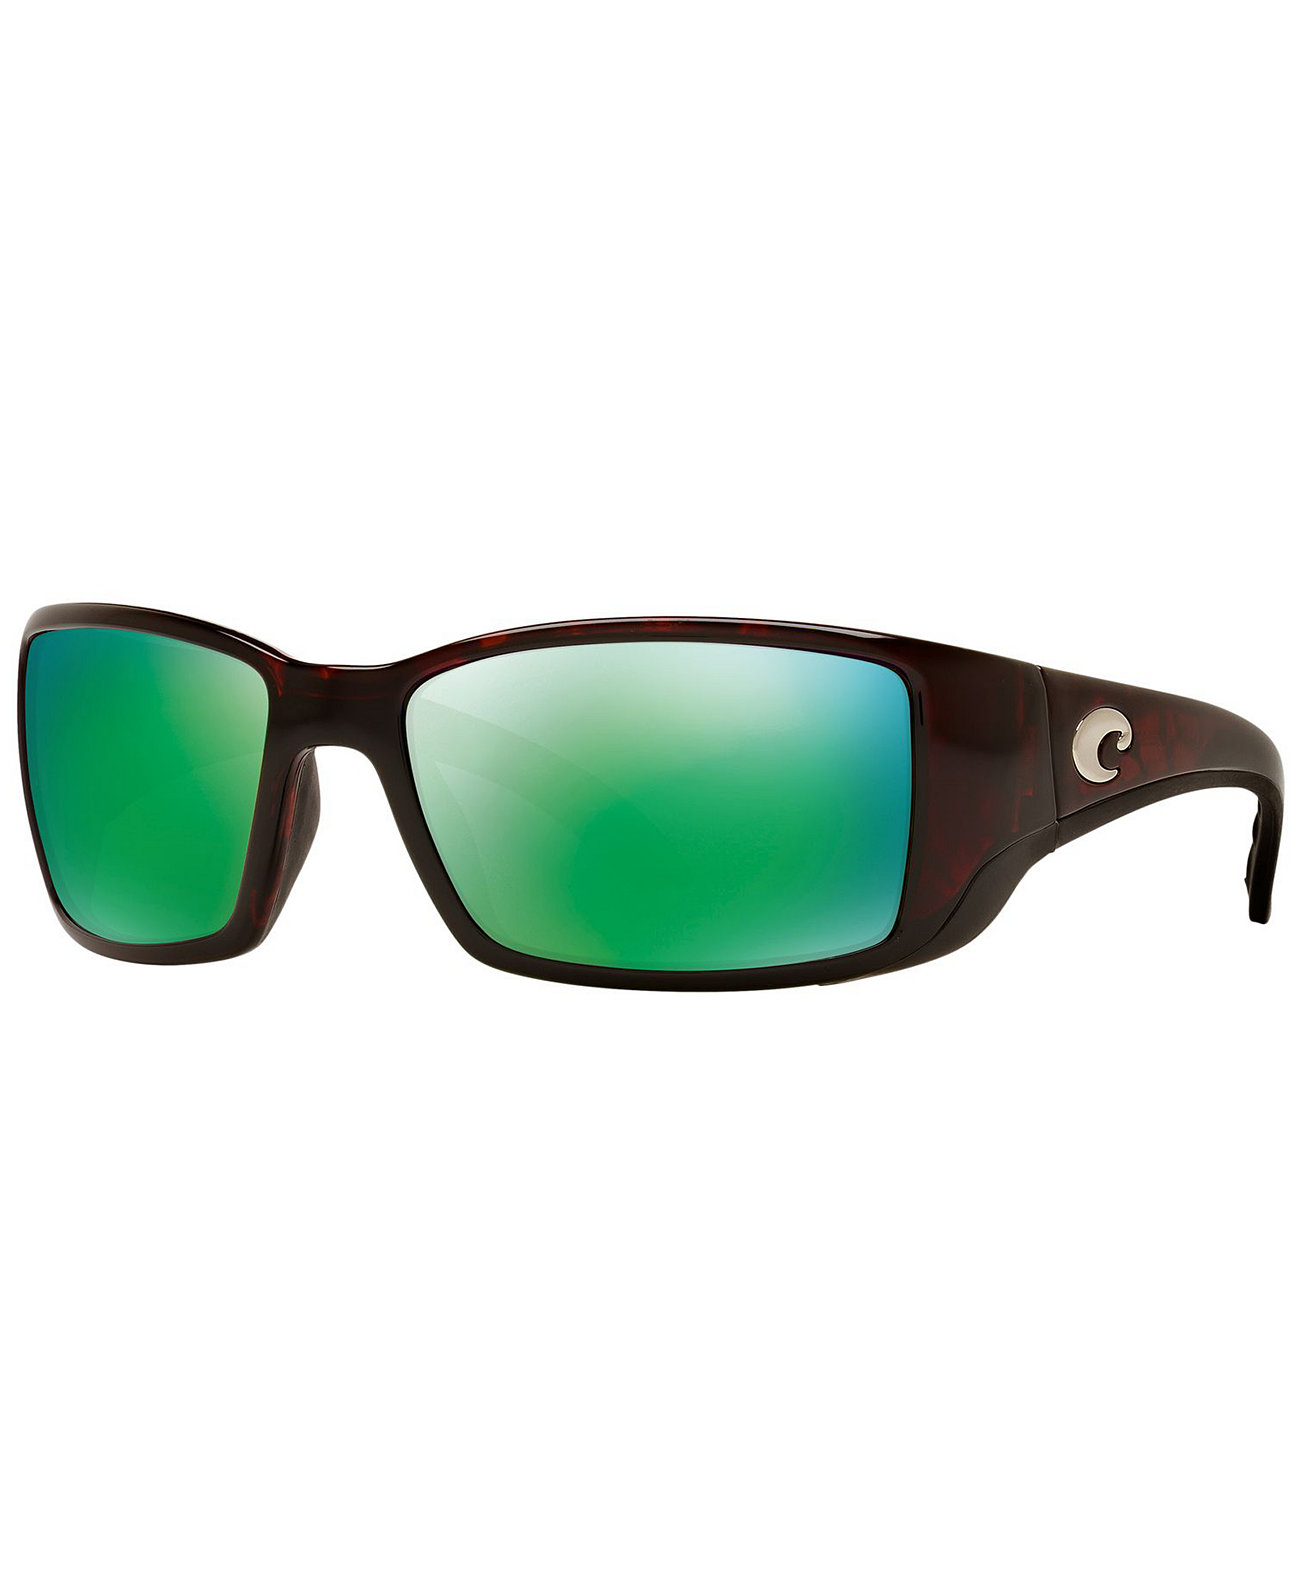 Поляризованные солнцезащитные очки, BLACKFIN 06S000003 62P COSTA DEL MAR